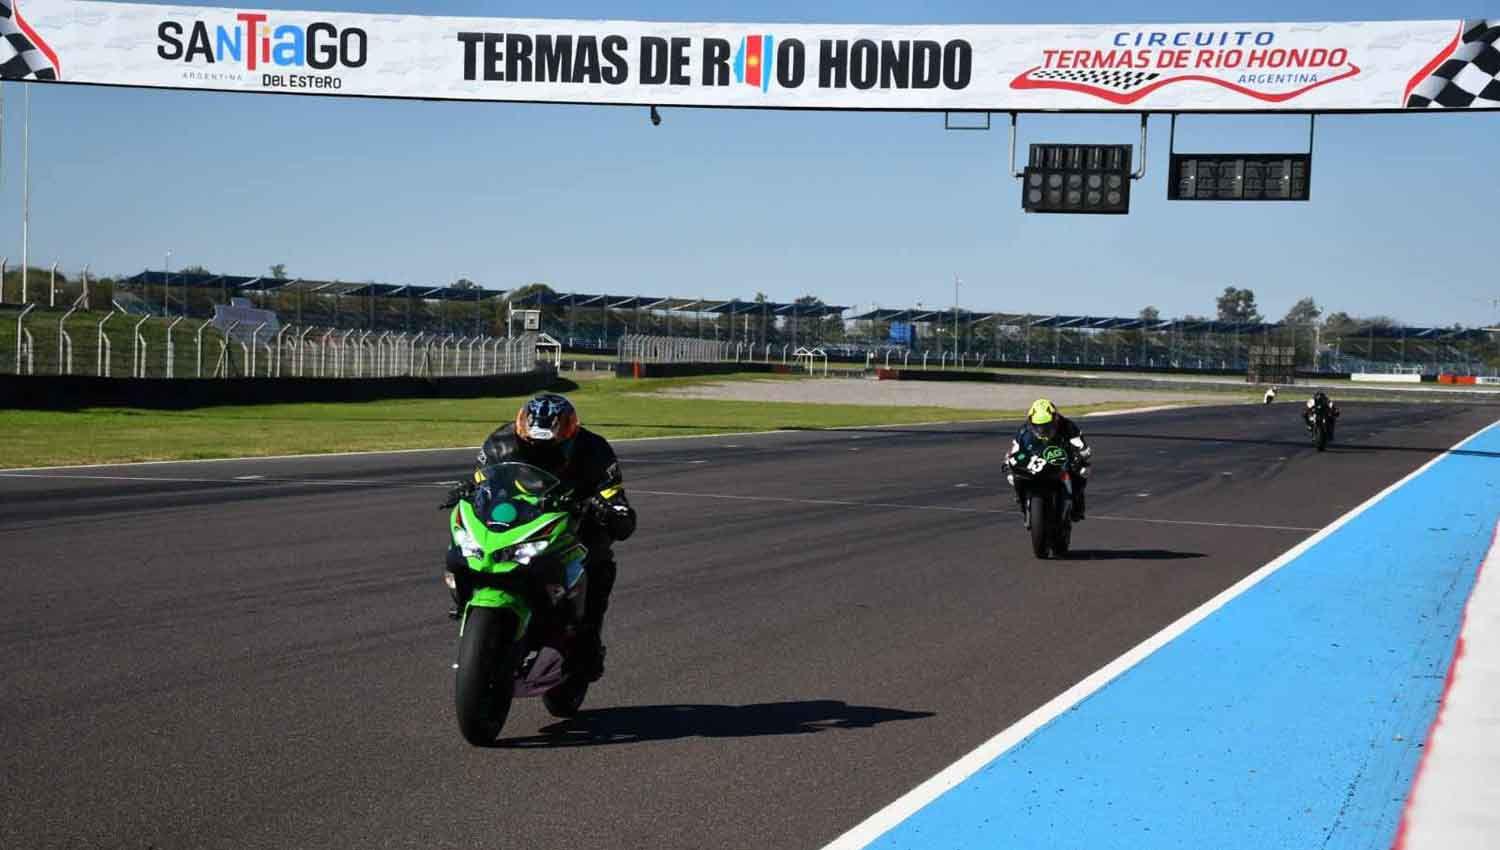 Gran inicio de la segunda edicioacuten de pruebas libres de motos en el Autoacutedromo de las Termas de Riacuteo Hondo